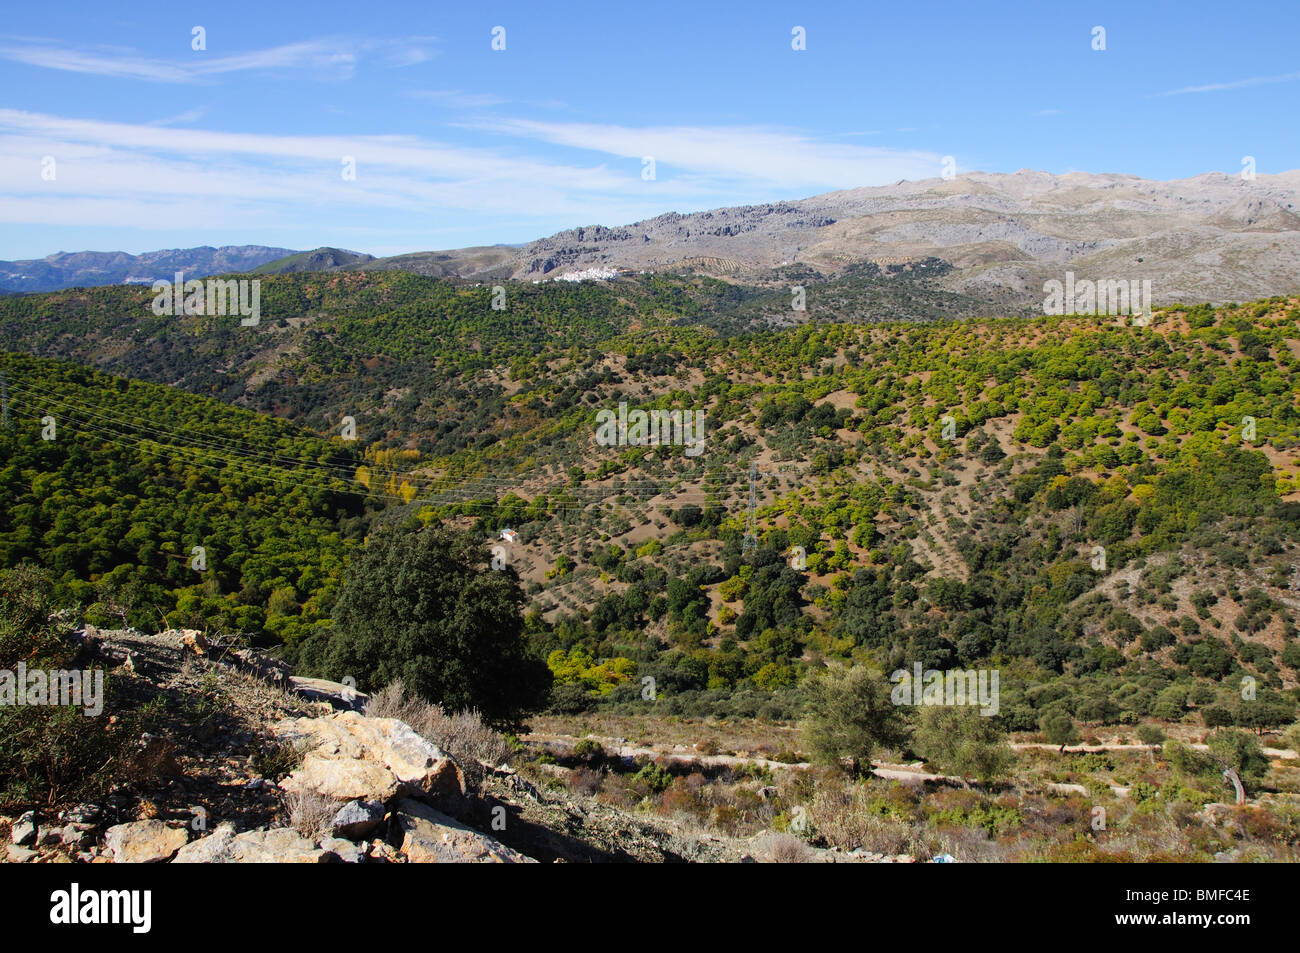 View of countryside, Igualeja, Serrania de Ronda, Malaga Province, Andalucia, Spain. Stock Photo